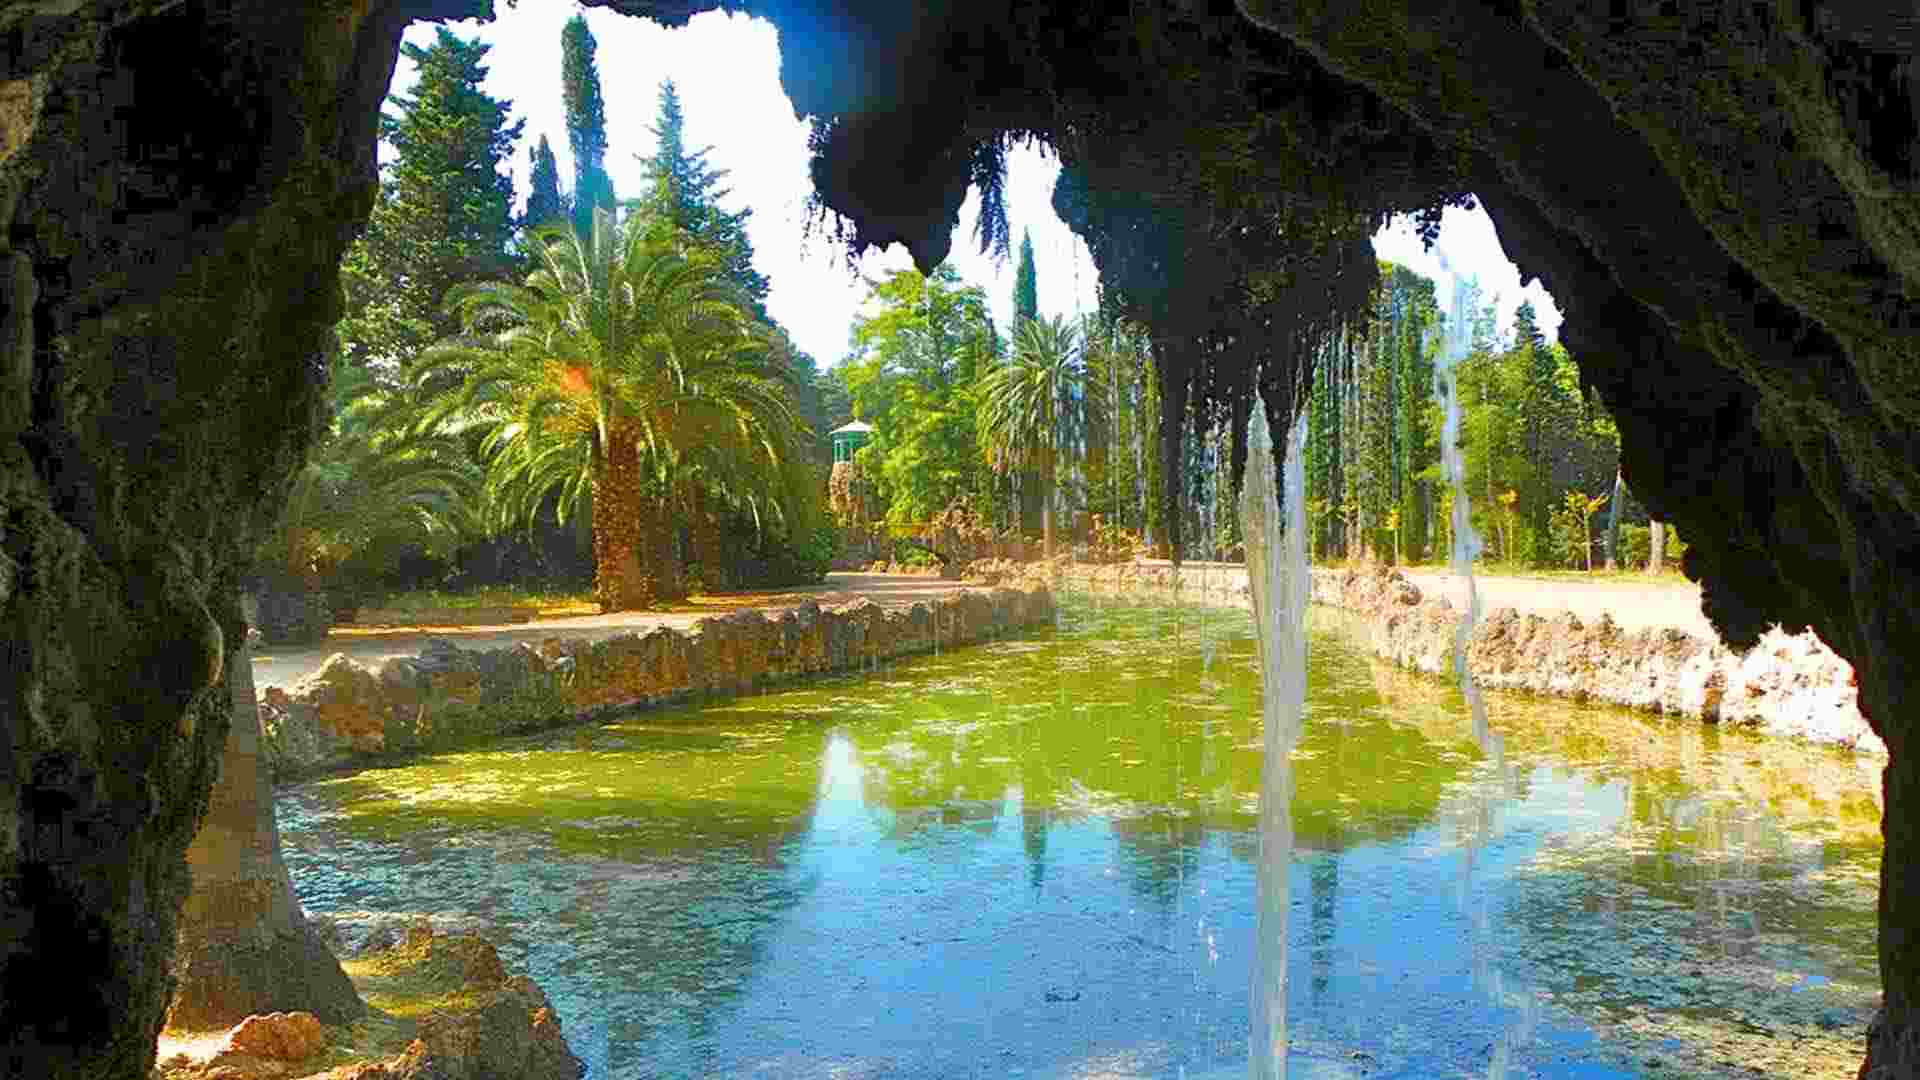 Esto no es Cuba, es un parque alucinante que tenemos aquí mismo en Catalunya